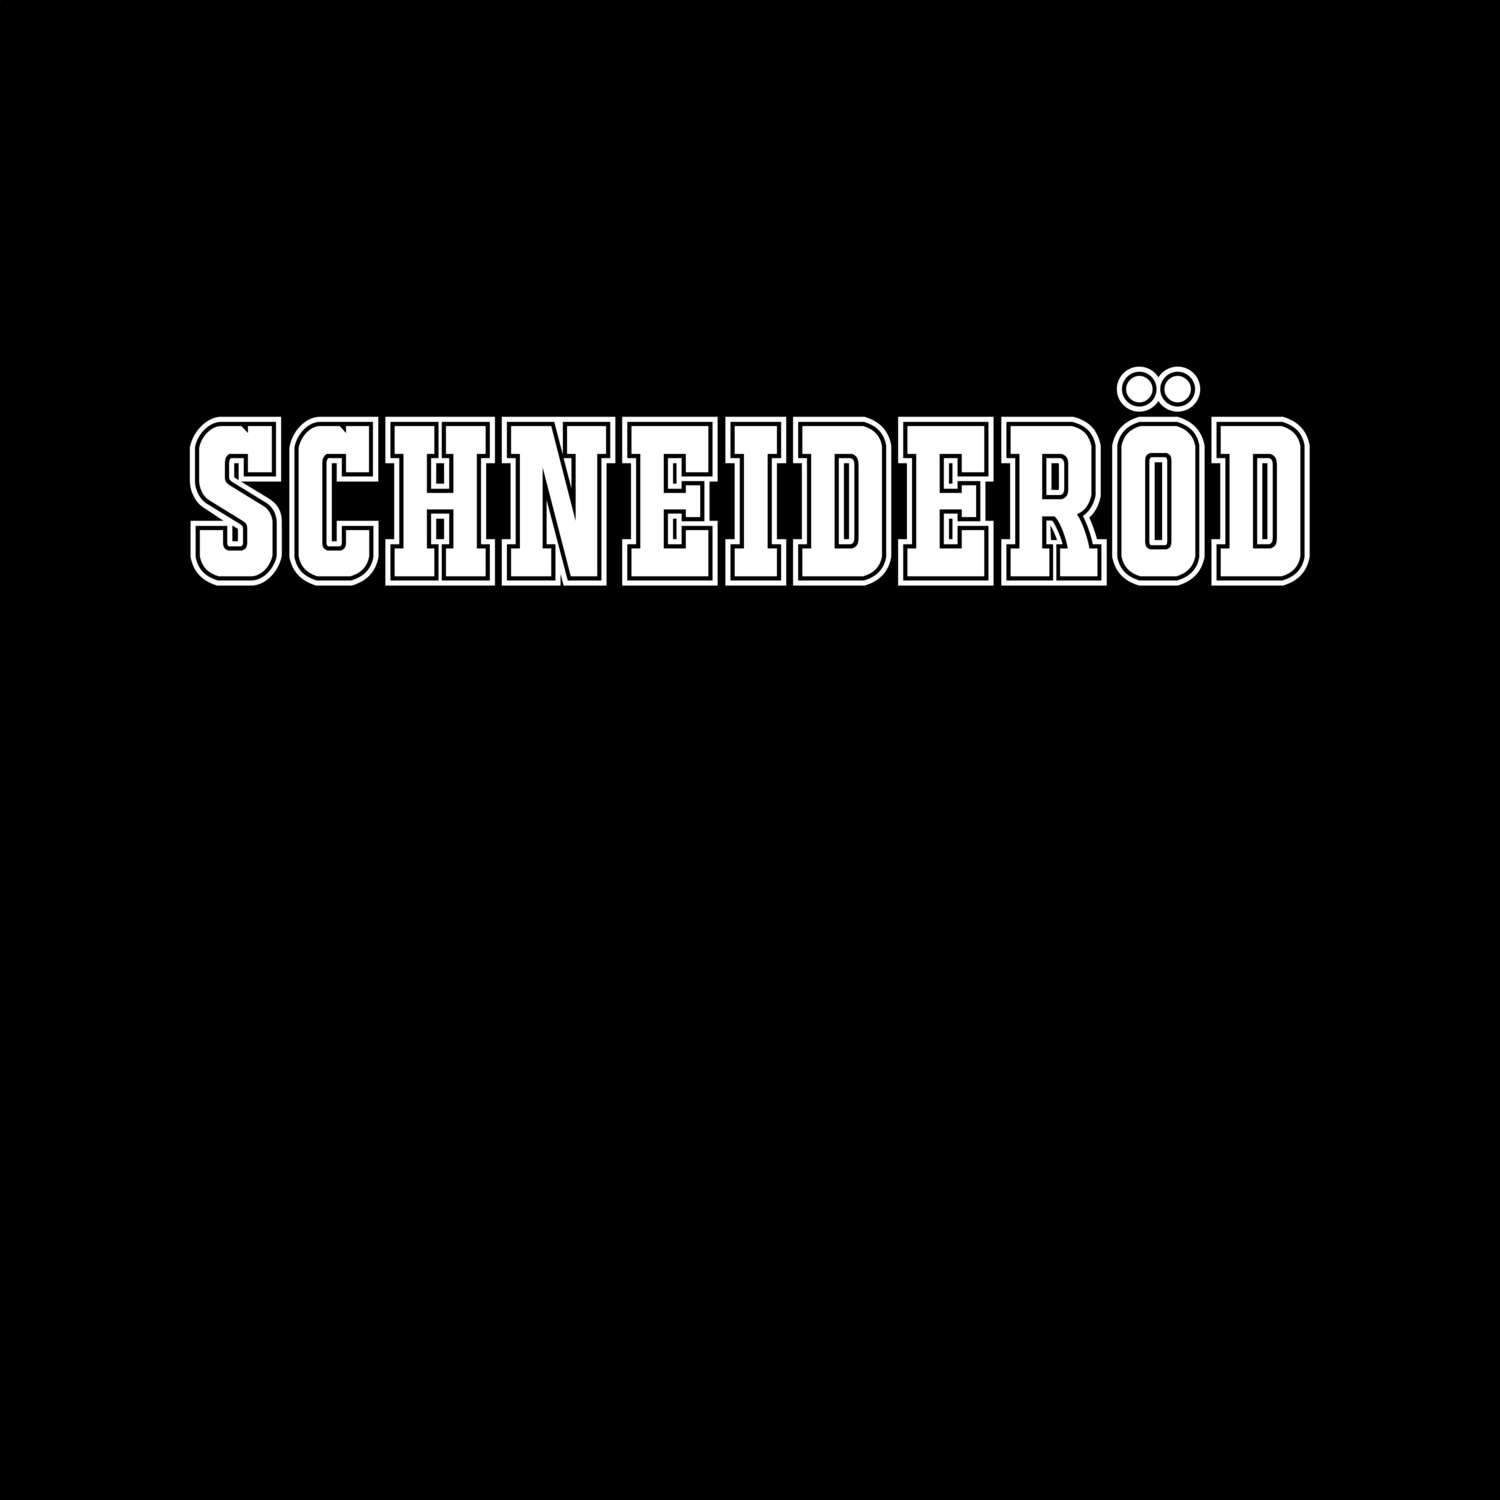 Schneideröd T-Shirt »Classic«